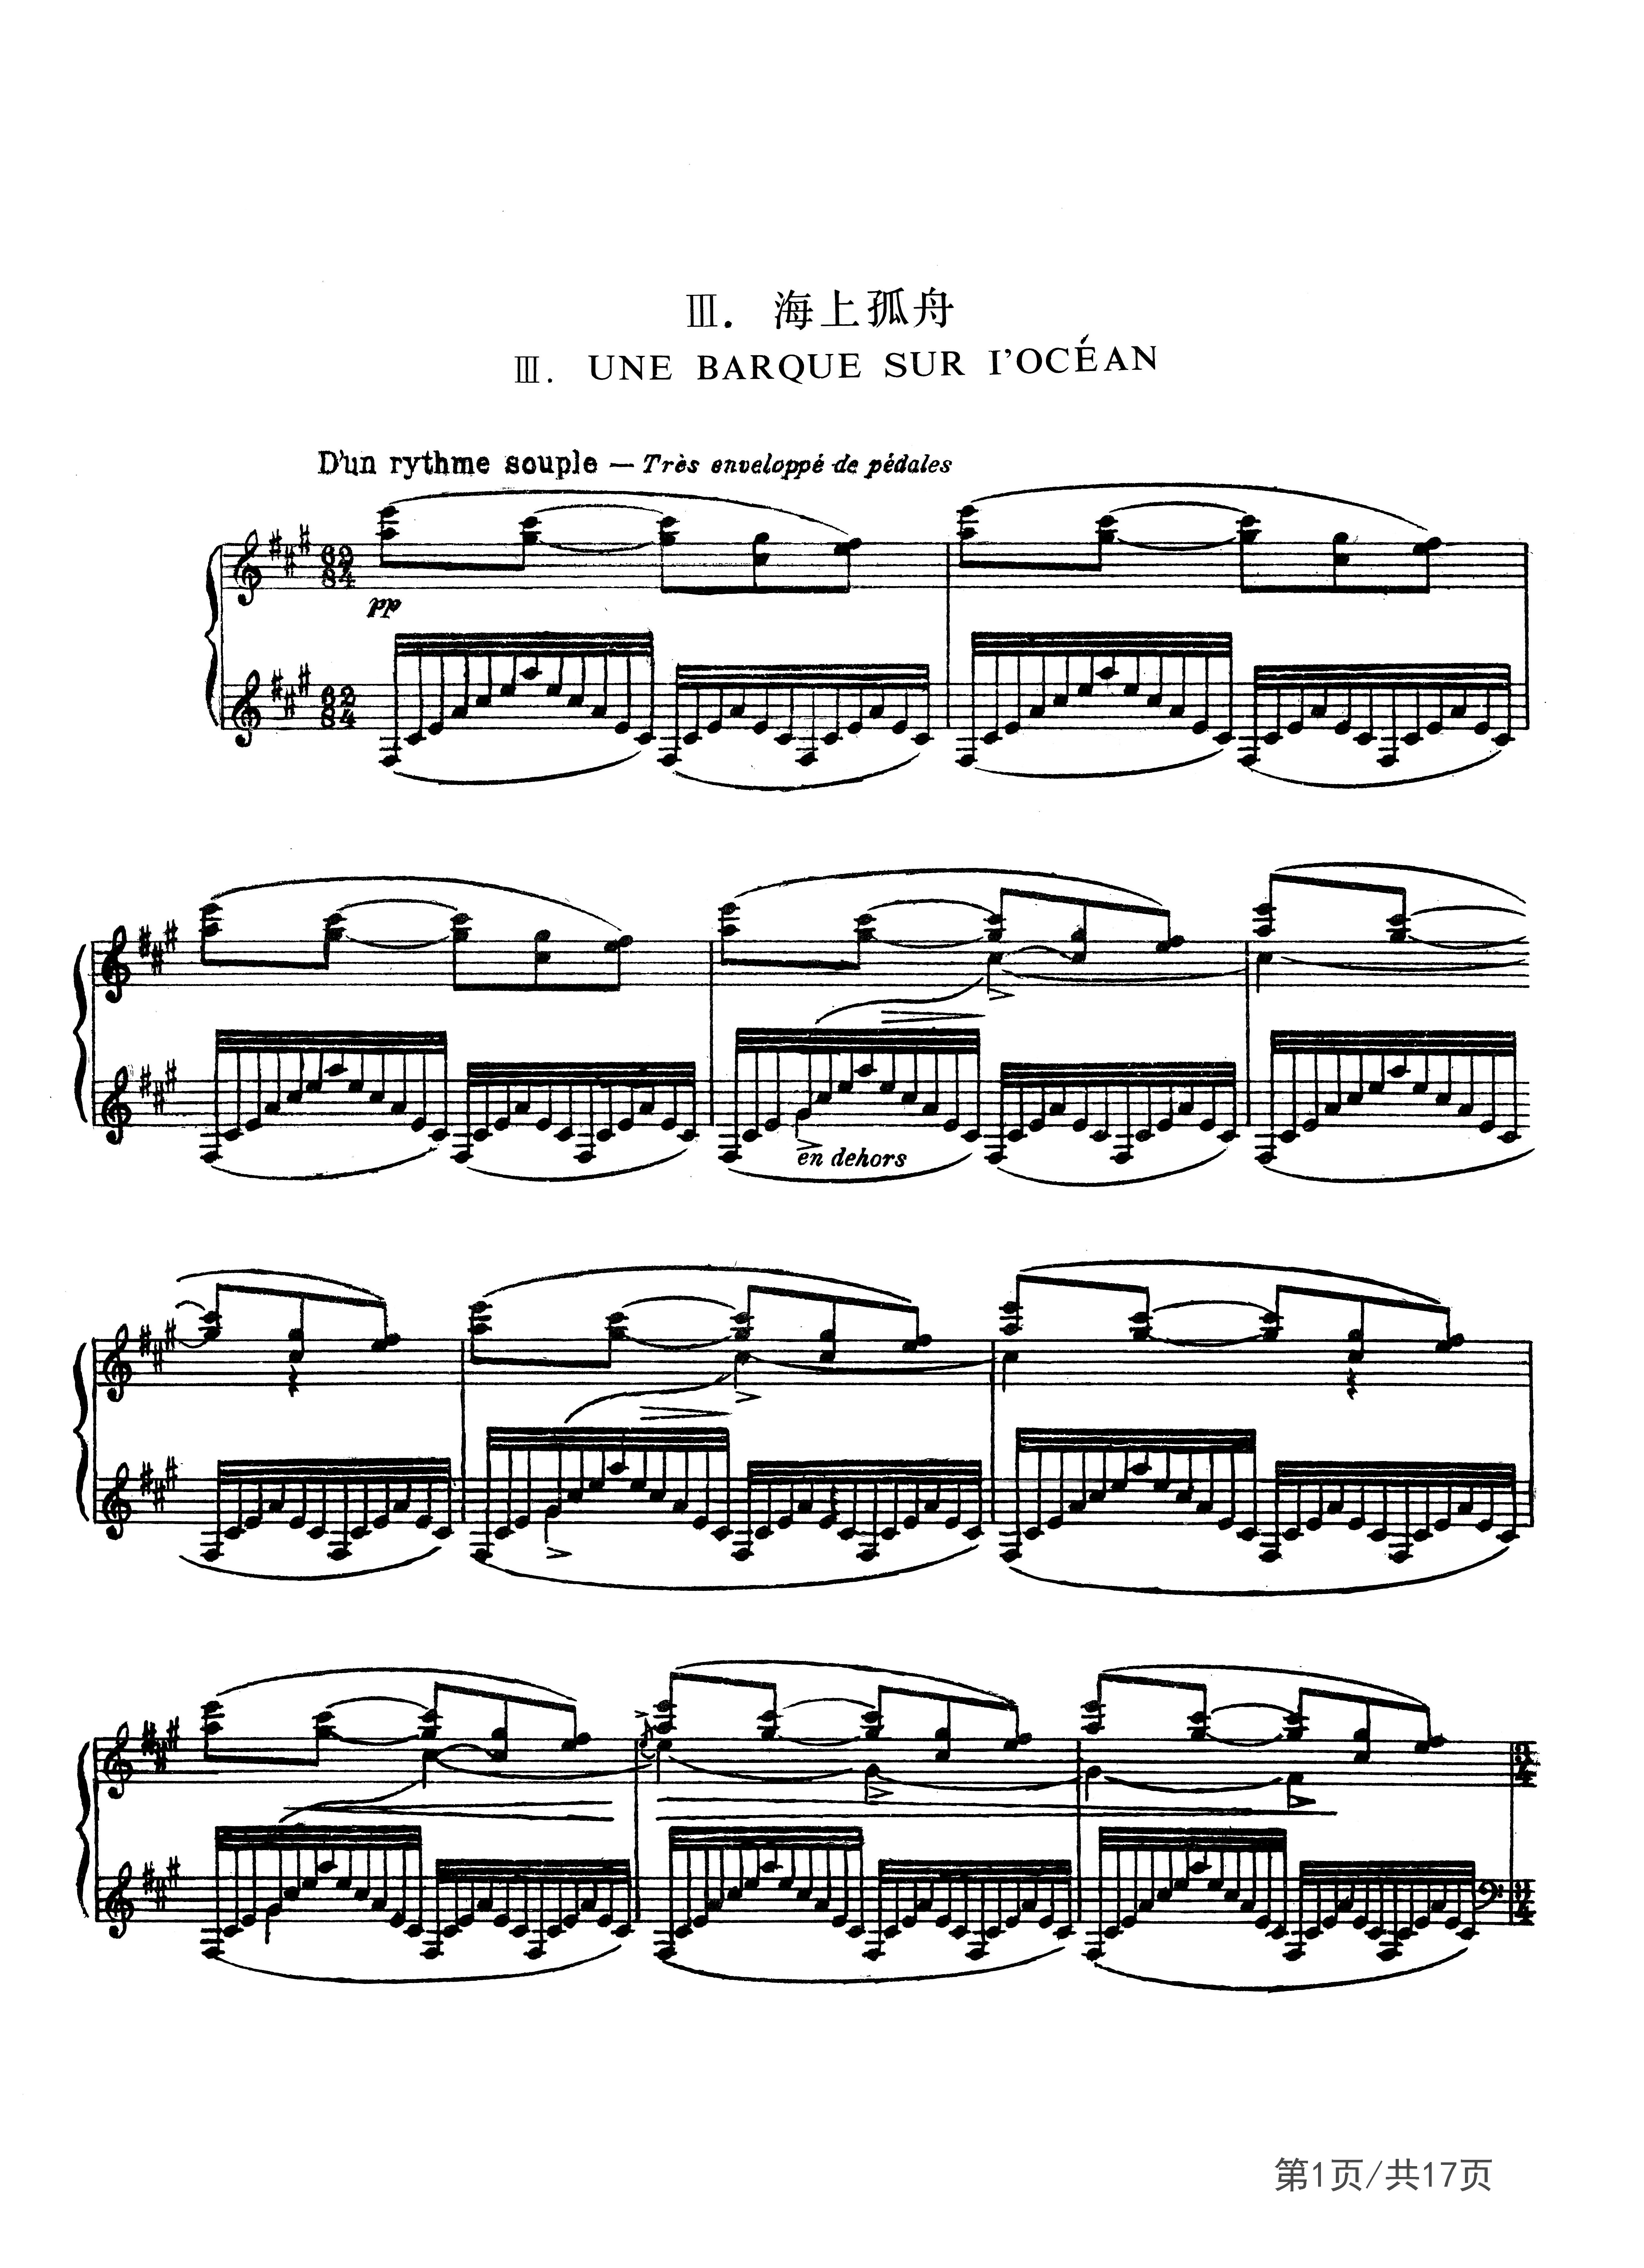 在1905年,拉威尔已有不少广泛闻名的作品问世,其中有钢琴曲《为已故